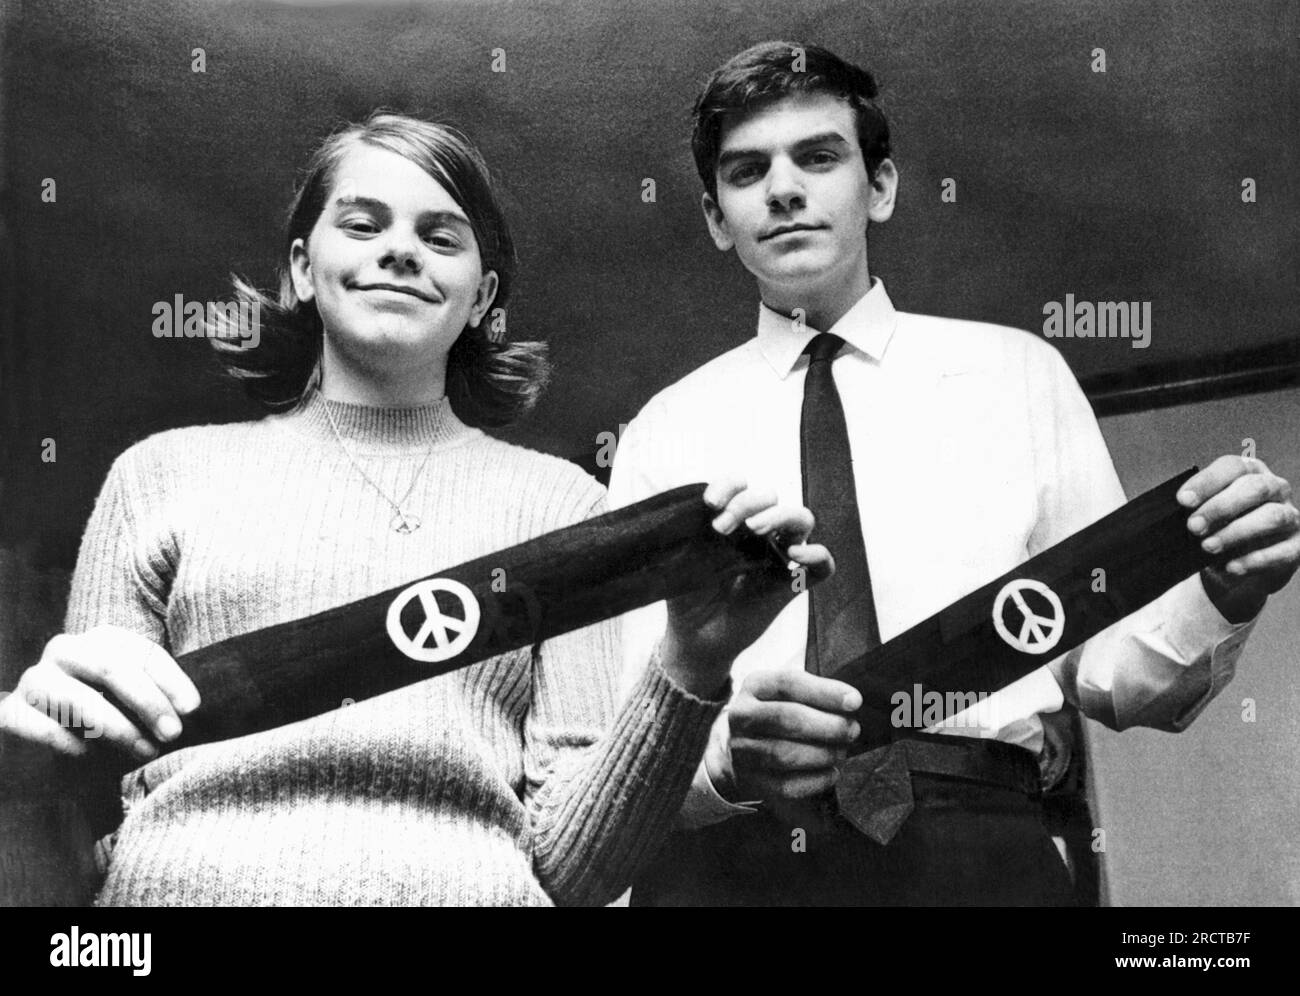 Des Moines, Iowa: 4 marzo 1968 questi due studenti, fratello e sorella, sono stati sospesi dalla North High School per aver indossato queste fasce per piangere i morti della guerra in Vietnam. Il caso sarà ascoltato davanti agli Stati Uniti Corte Suprema su quanto le scuole pubbliche possano limitare l'uso di simboli politici. Foto Stock